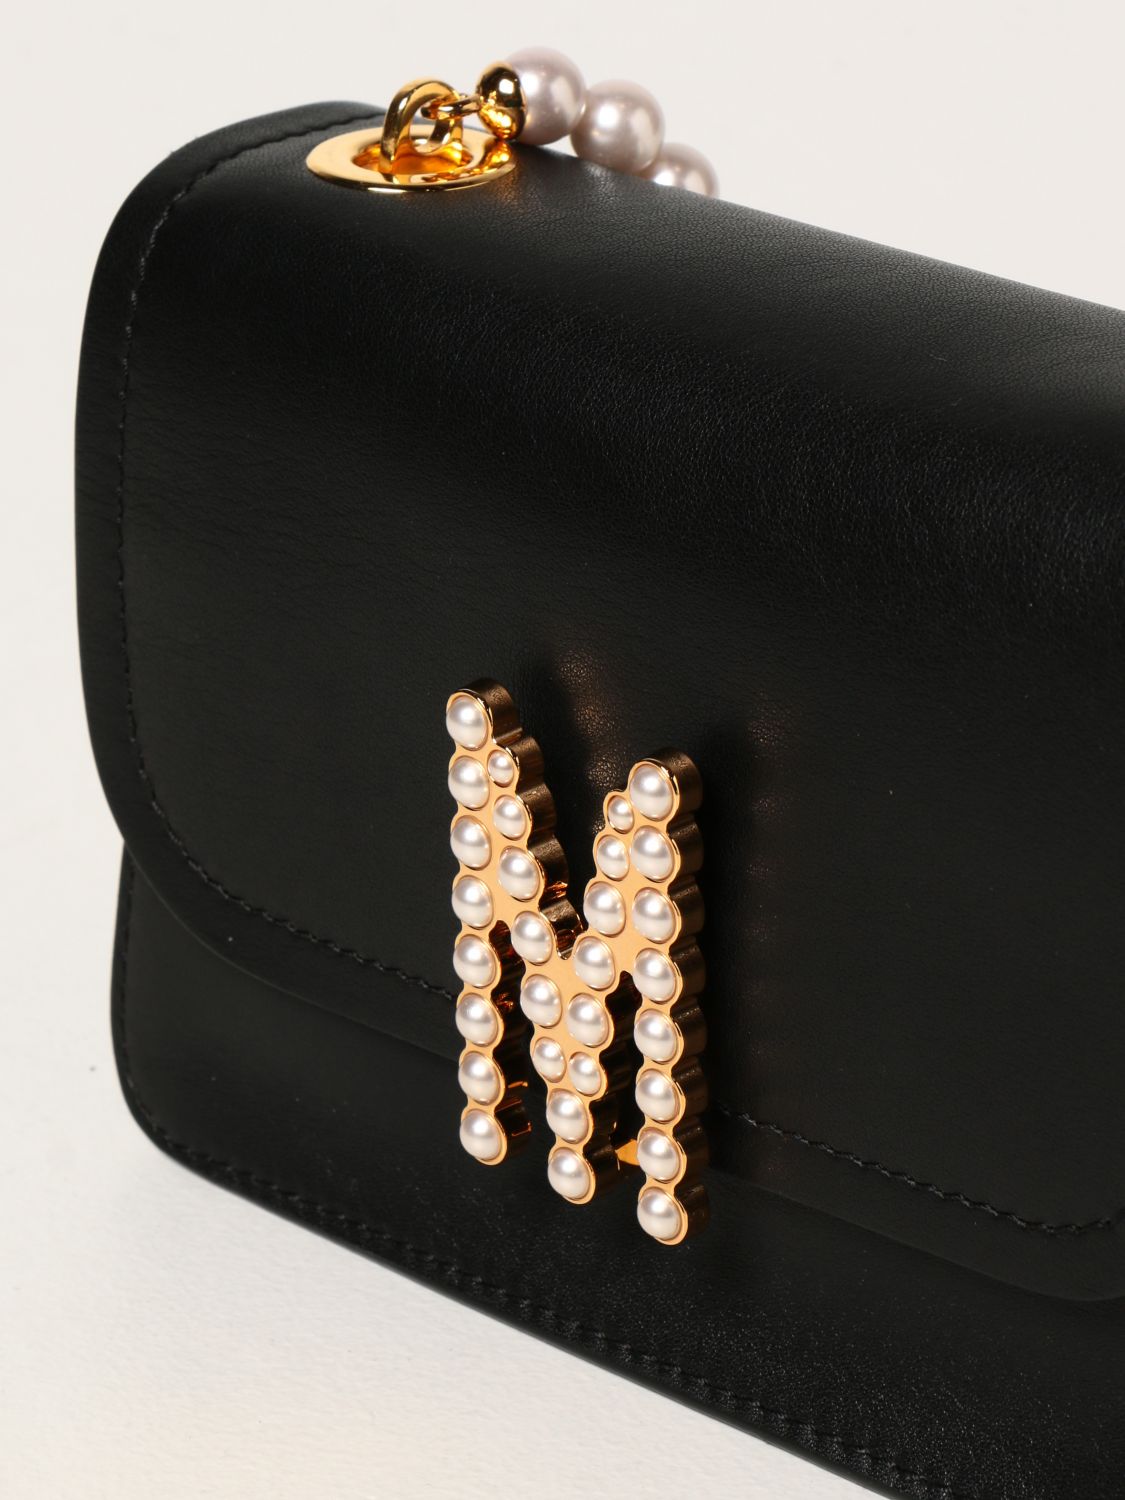 Mini- Tasche Moschino Couture: Handtasche damen Moschino Couture schwarz 4